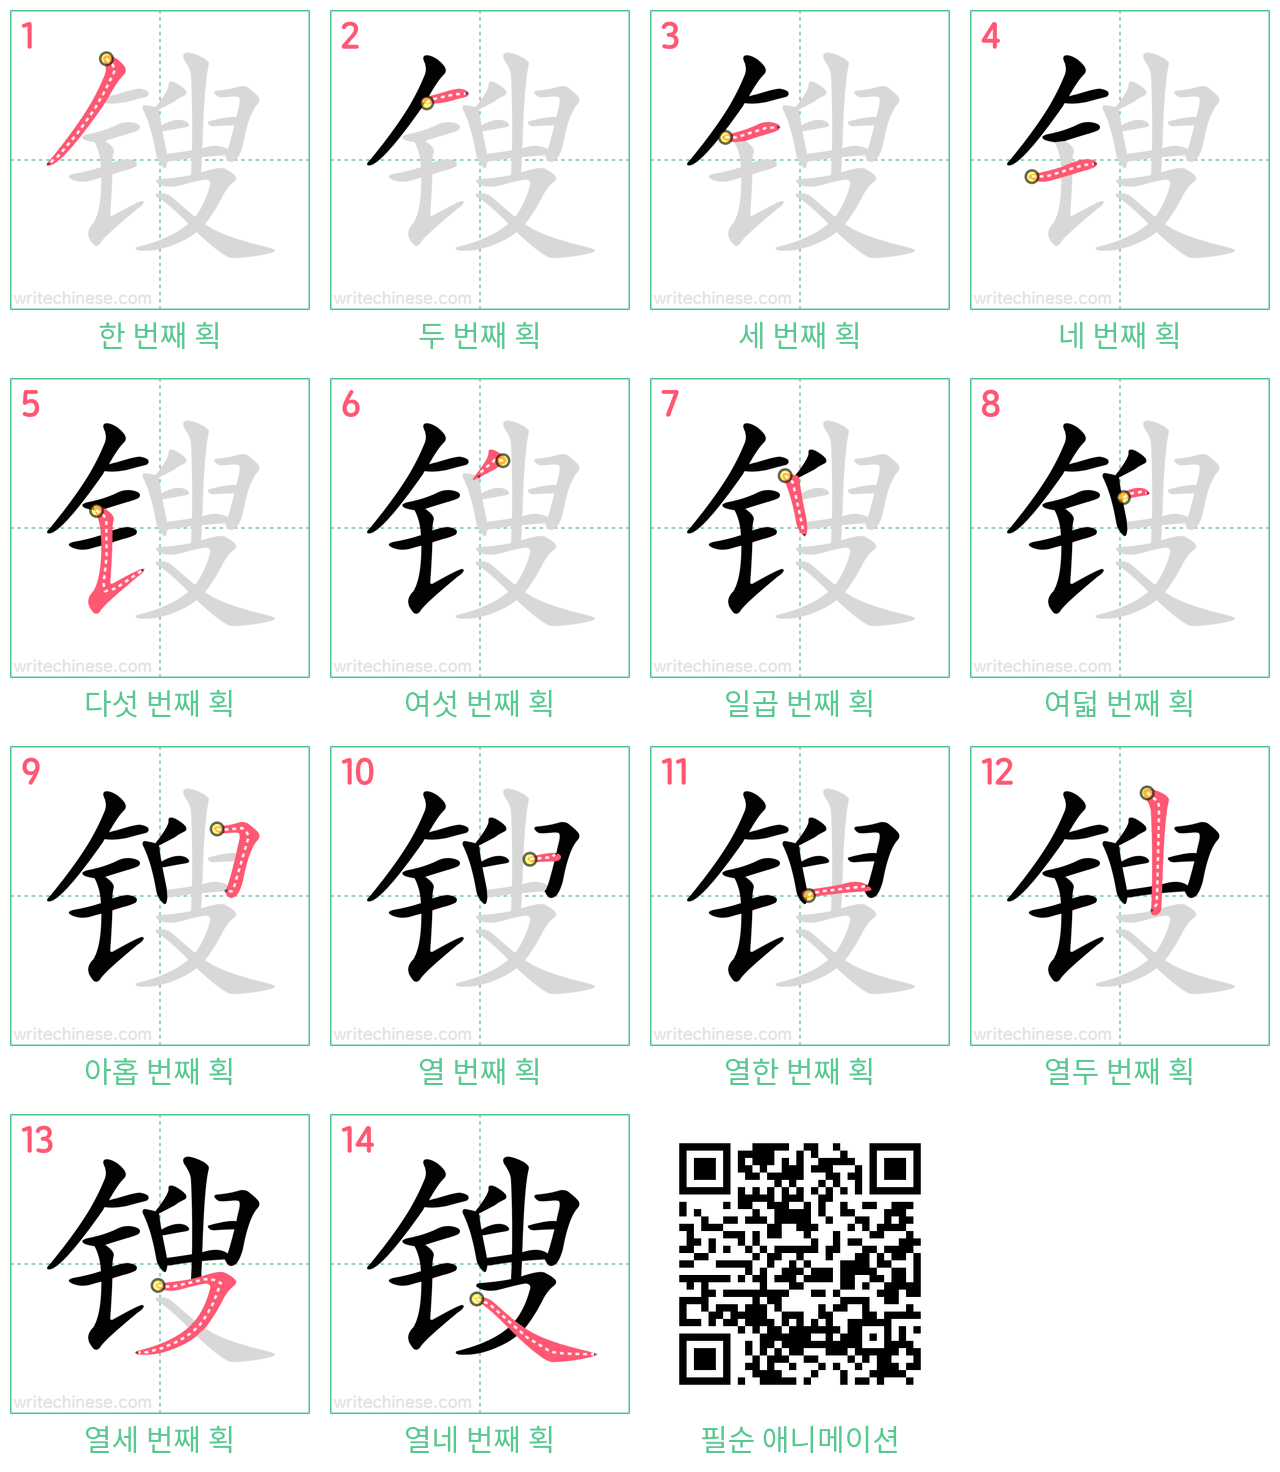 锼 step-by-step stroke order diagrams